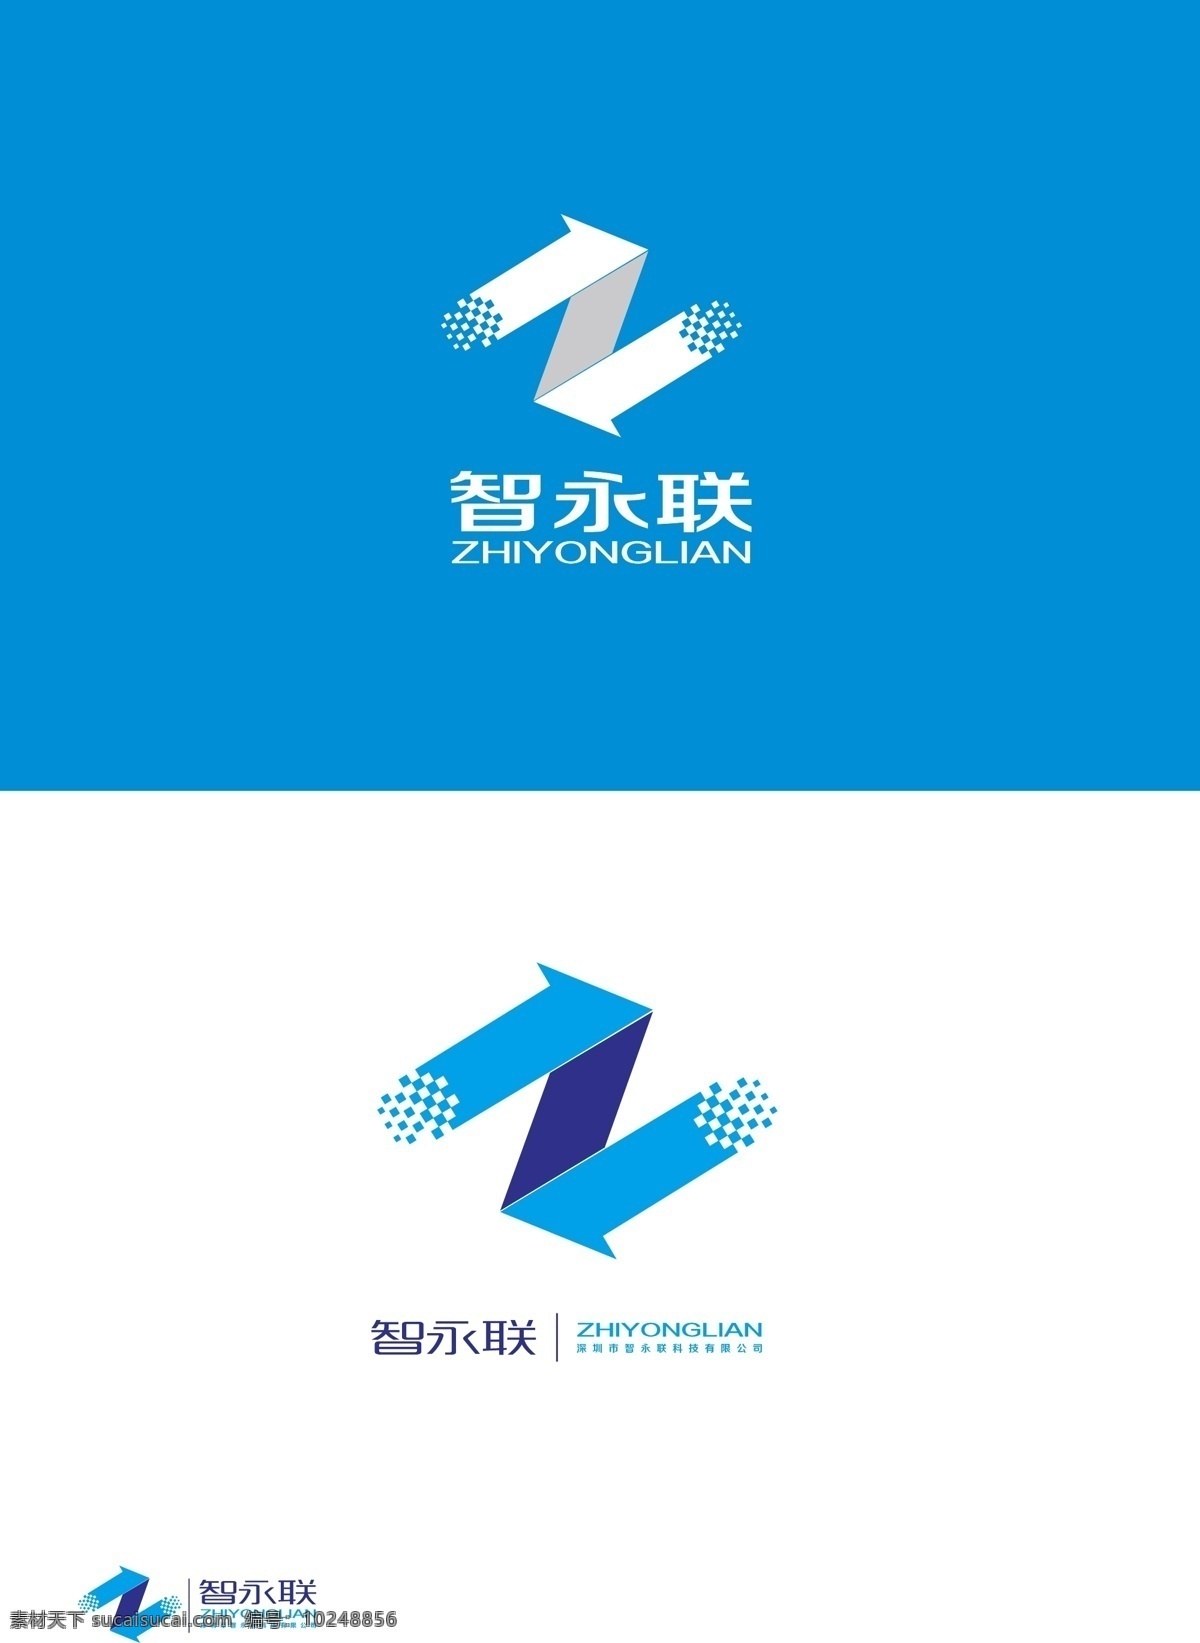 科技 logo logo设计 标志设计 科技logo 科技标志 矢量图